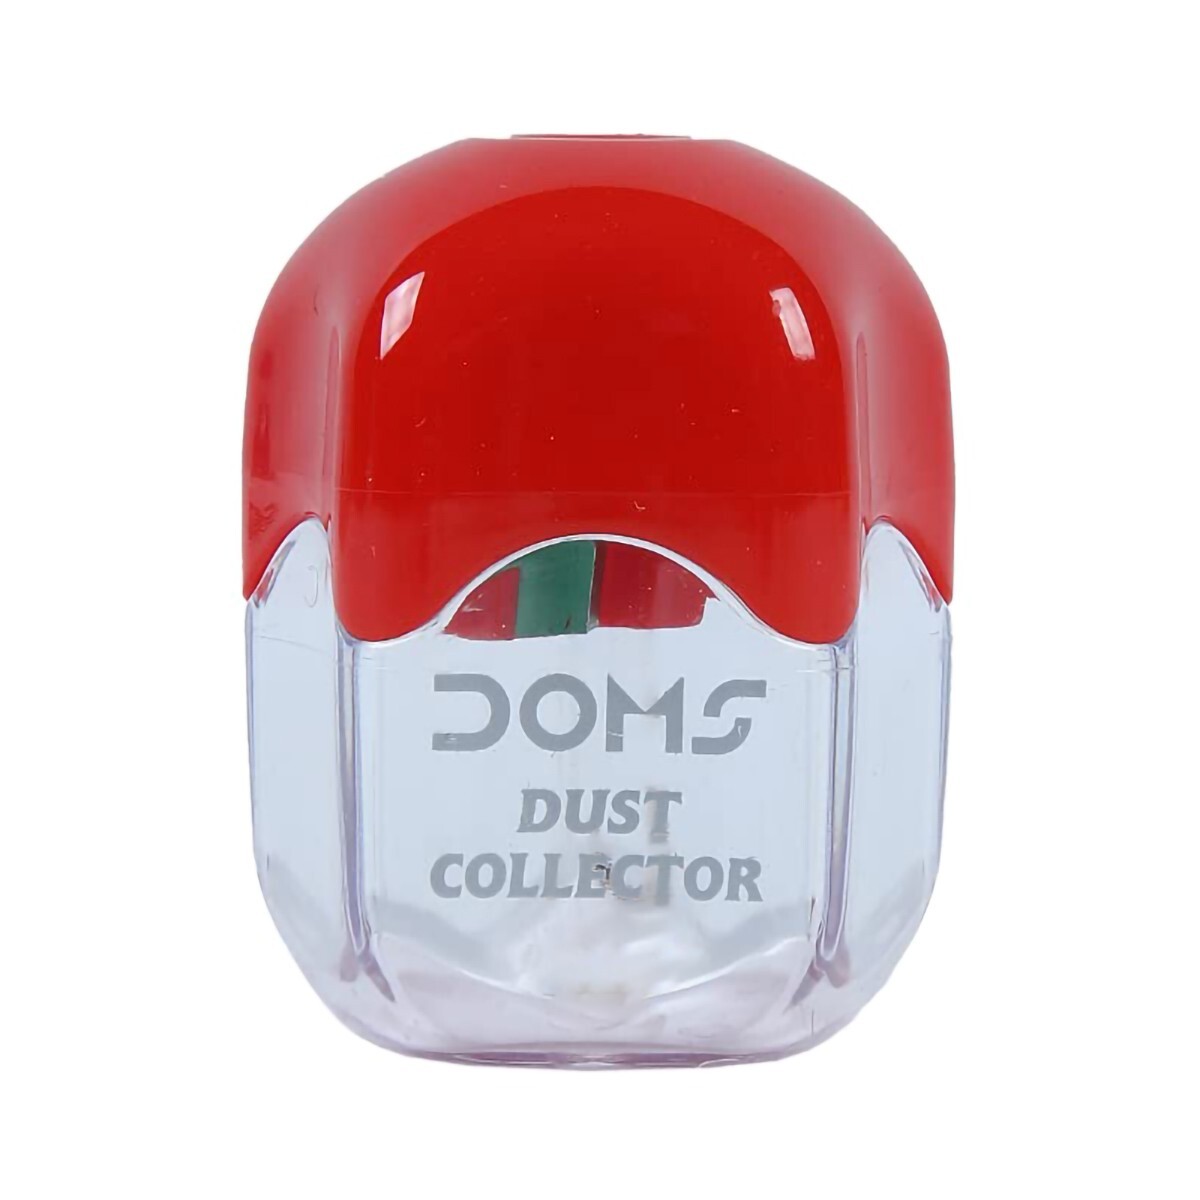 Doms Dust Collector Sharpner 8191